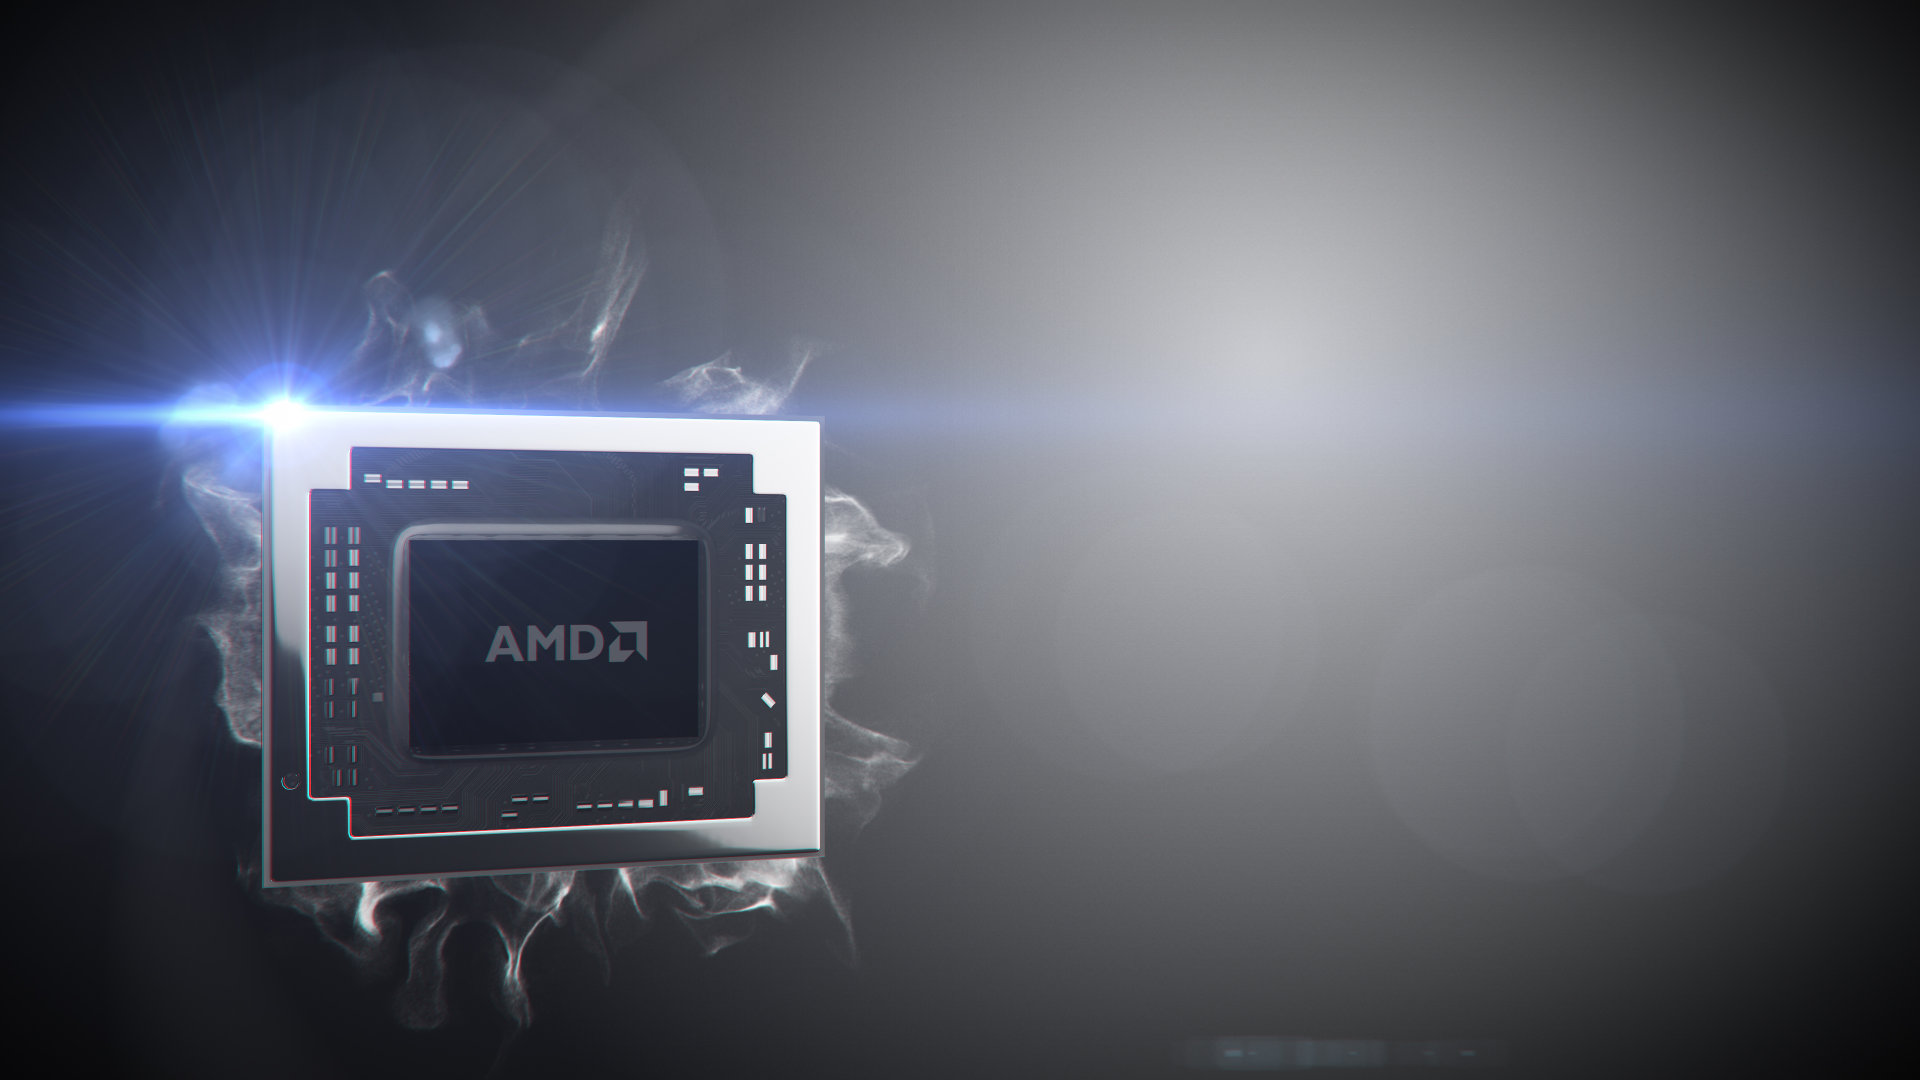 หลุดข้อมูล AMD Bristol Ridge APU ที่มาพร้อมกับบอร์ด AM4